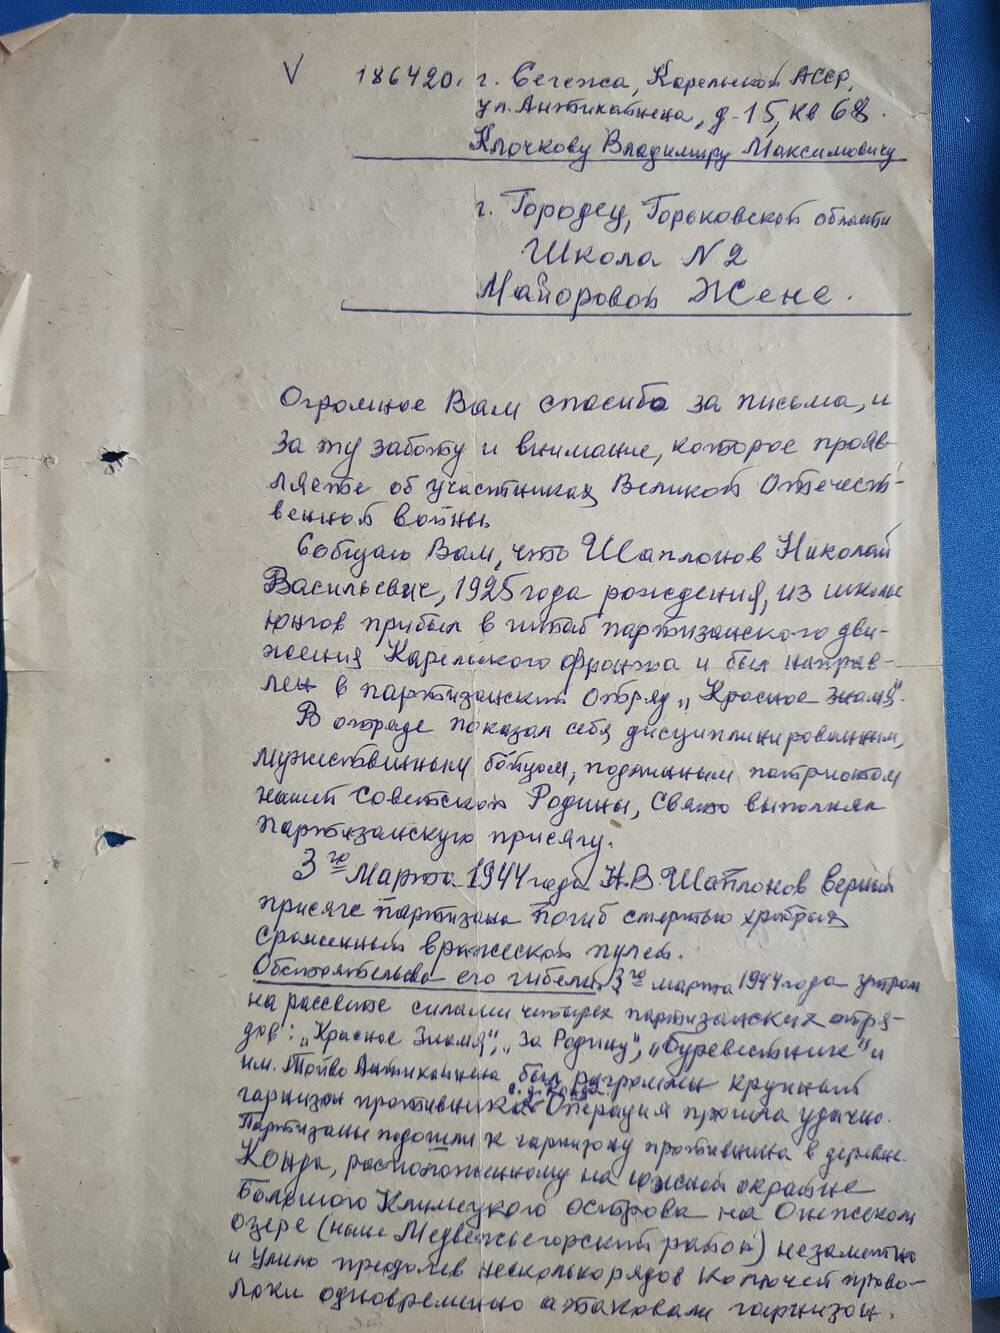 Письмо Майоровой Жене от В.П. Введенского